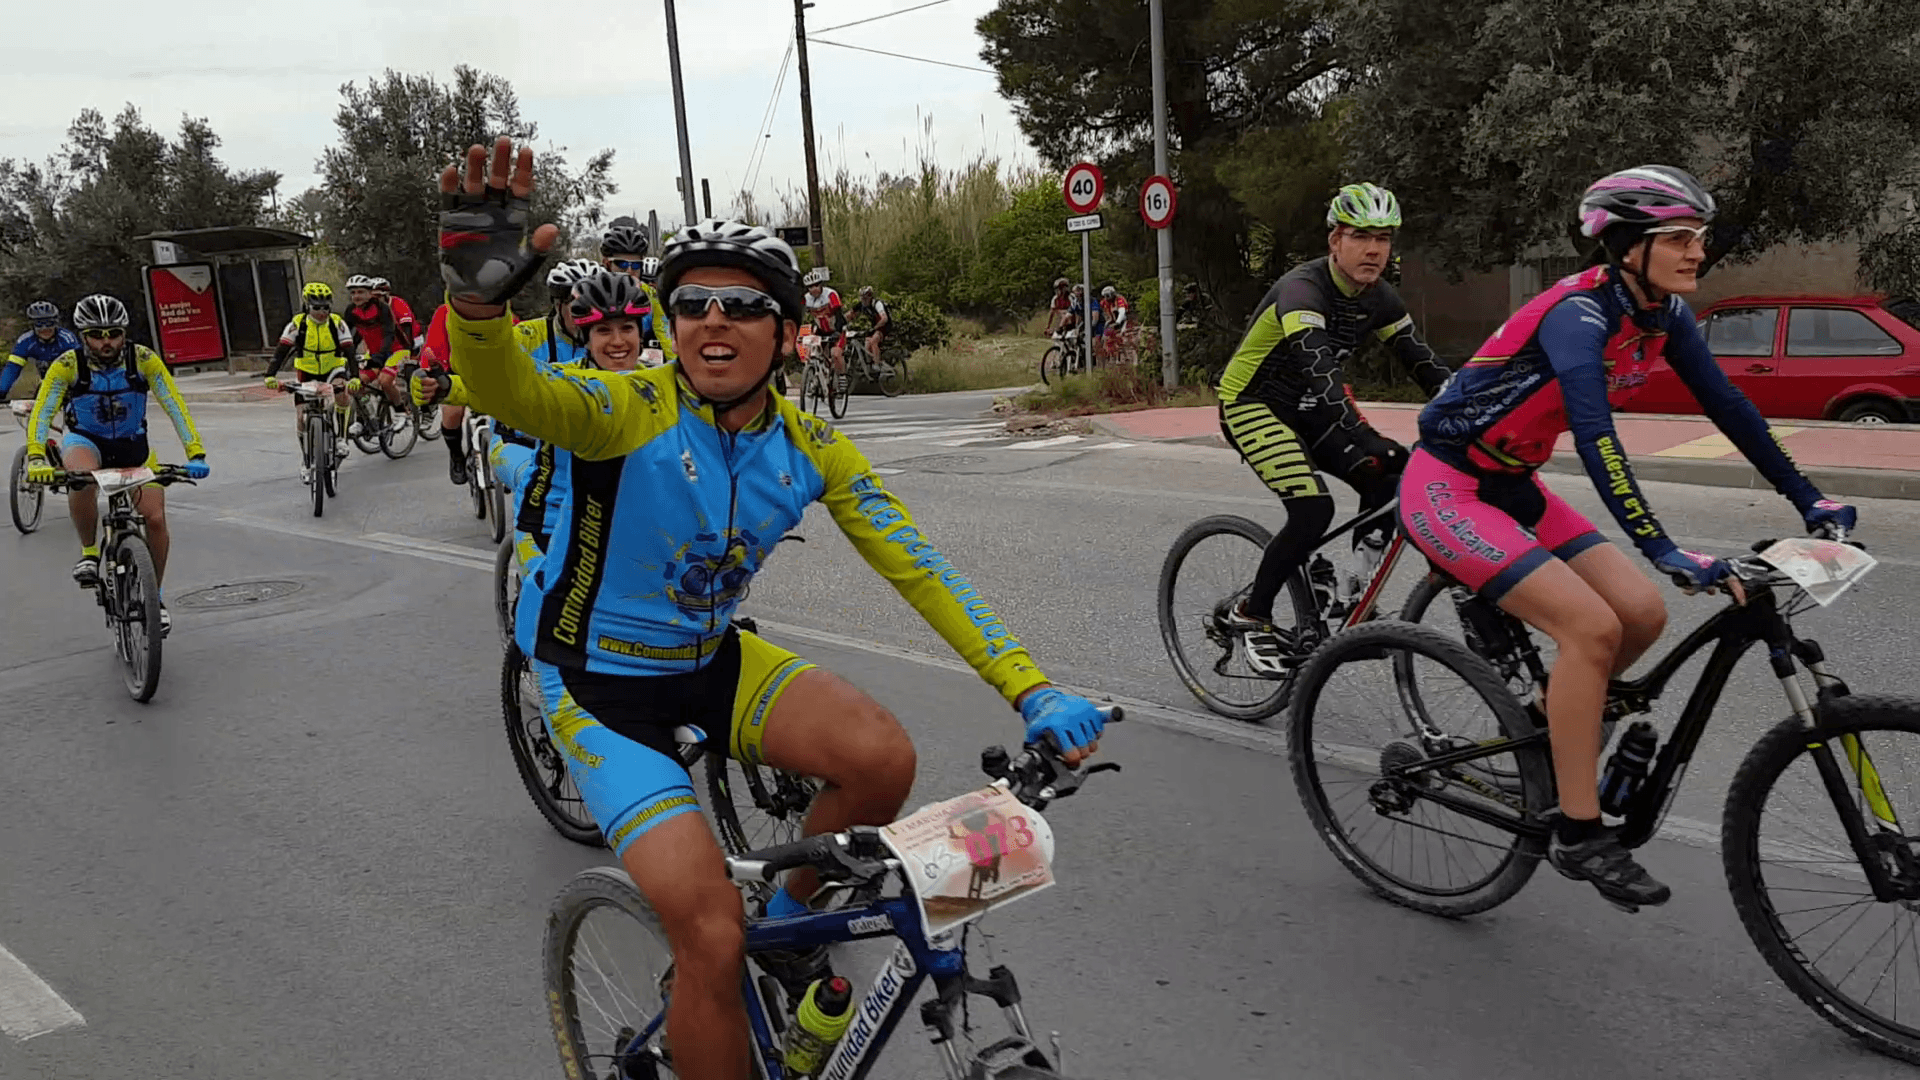 Crónica I Marcha Valverdes Bikers con las enfermedades raras por Paquito206